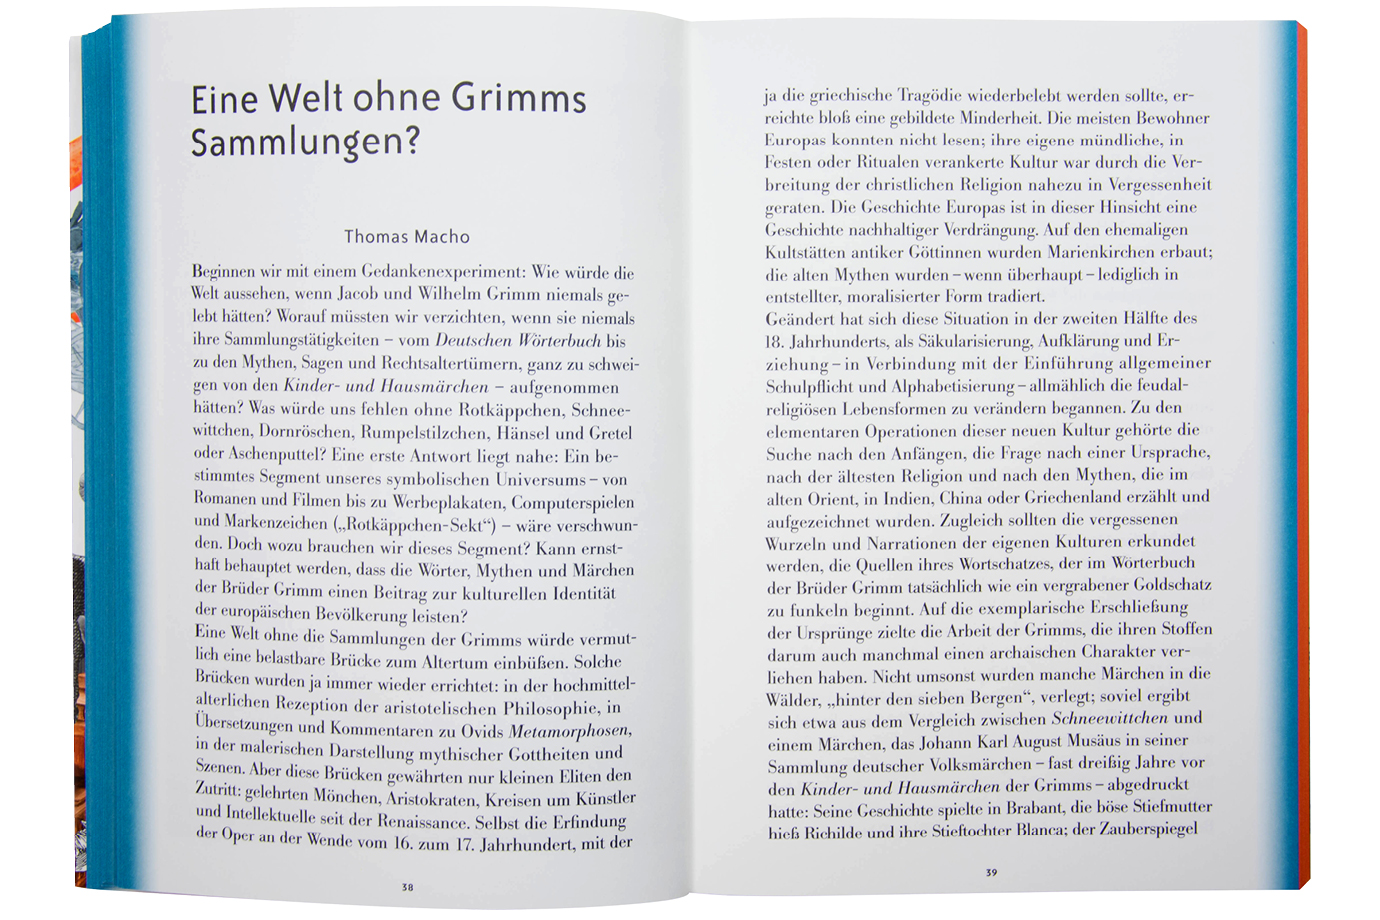 https://e-o-t.de/wordpress/wp-content/uploads/2017/05/2015_eot-Grimmwelt-Book-04.jpg